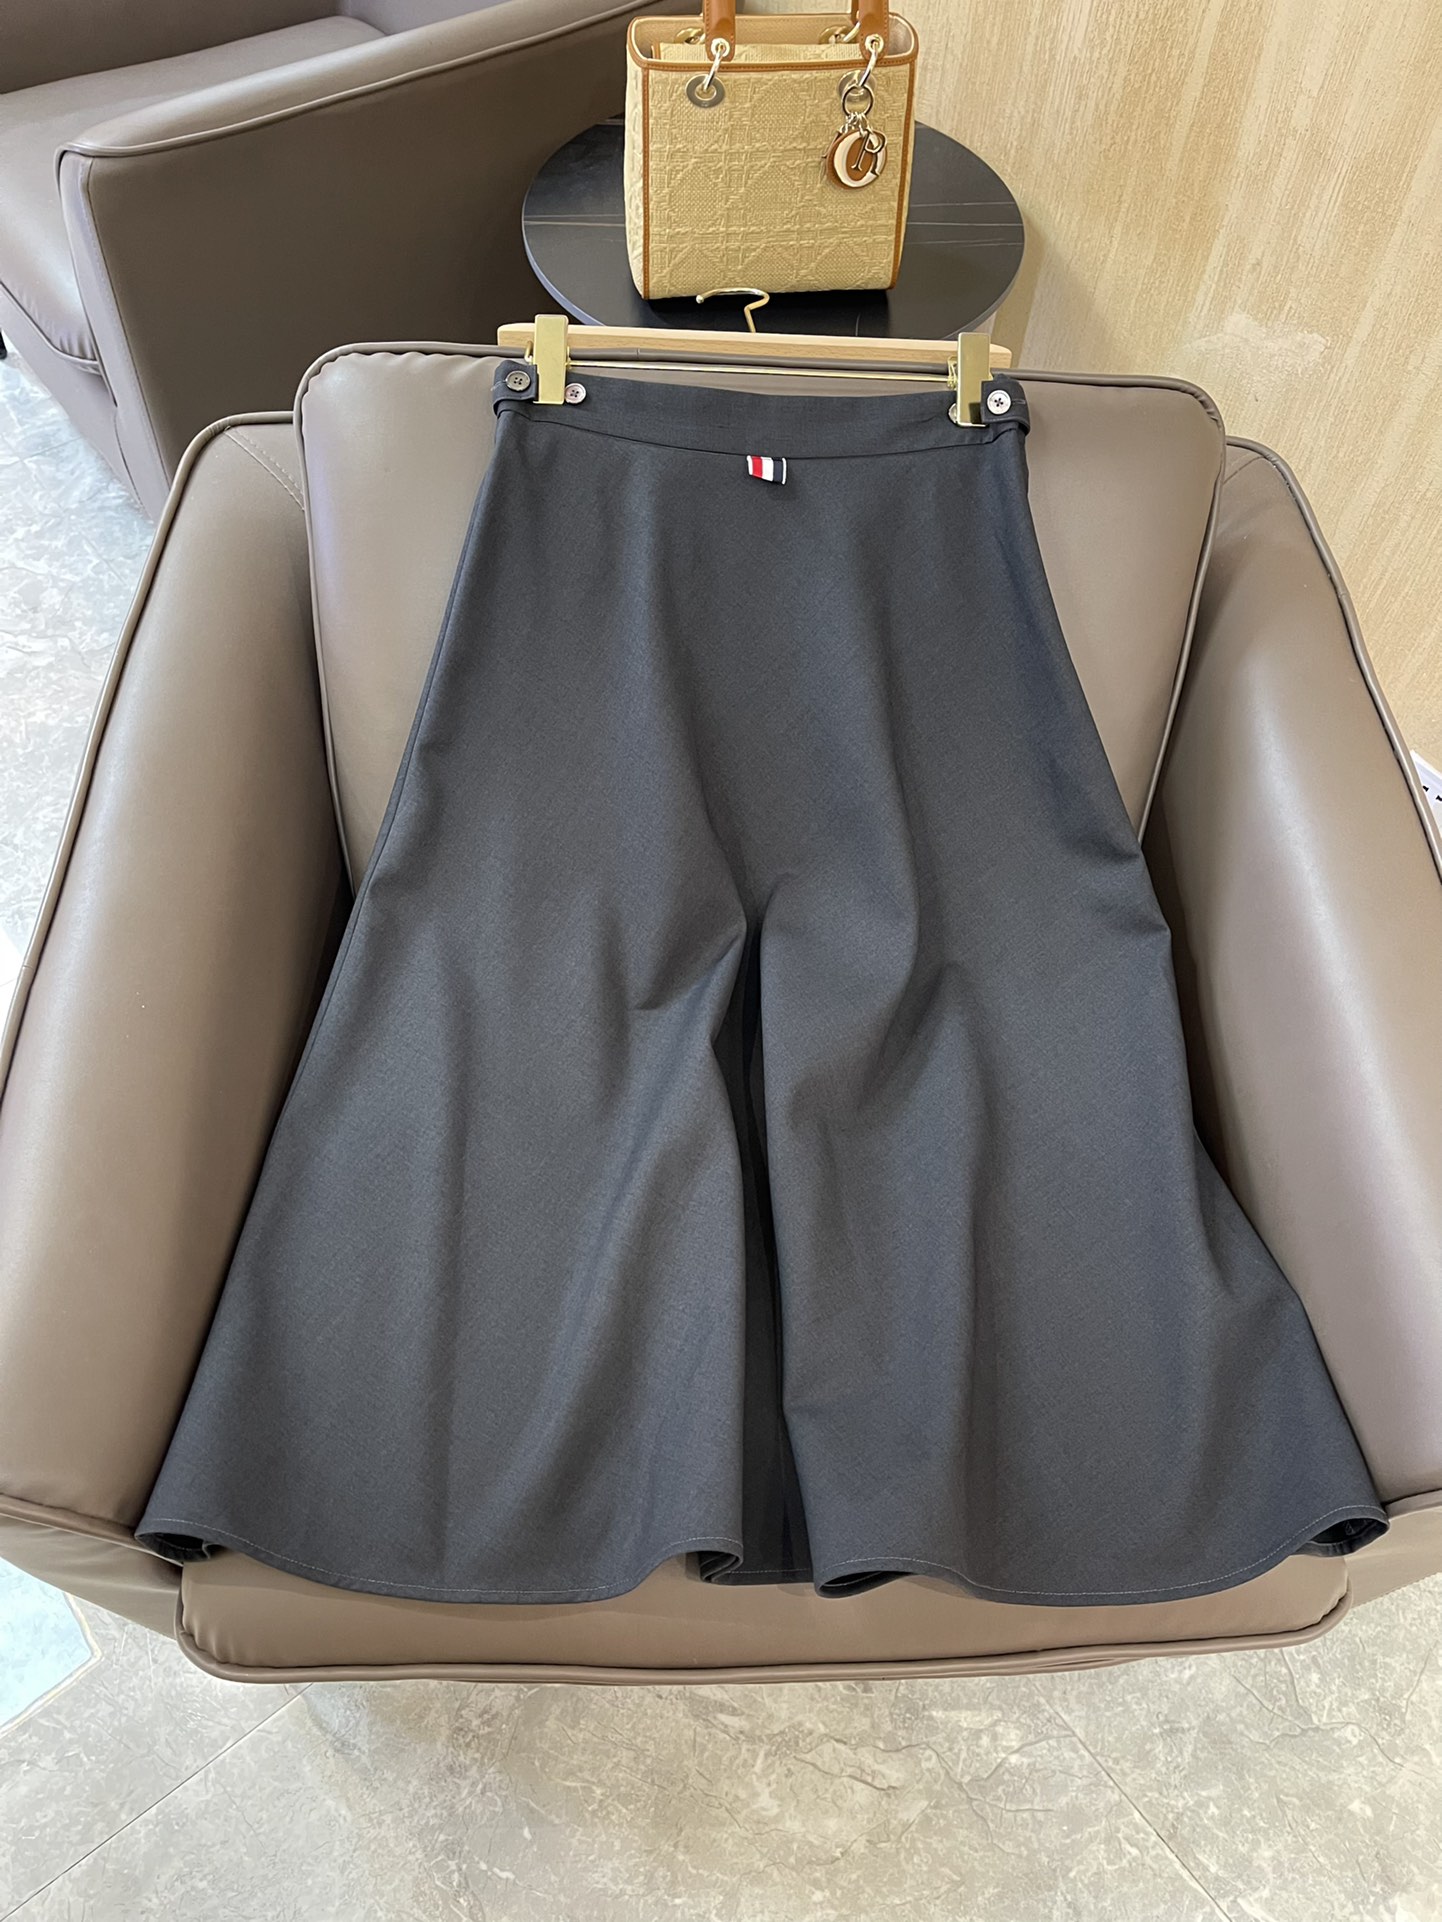 KZ008#新款半裙TB 最新款 西装料 长半裙 灰色 黑色 36-38-40-42